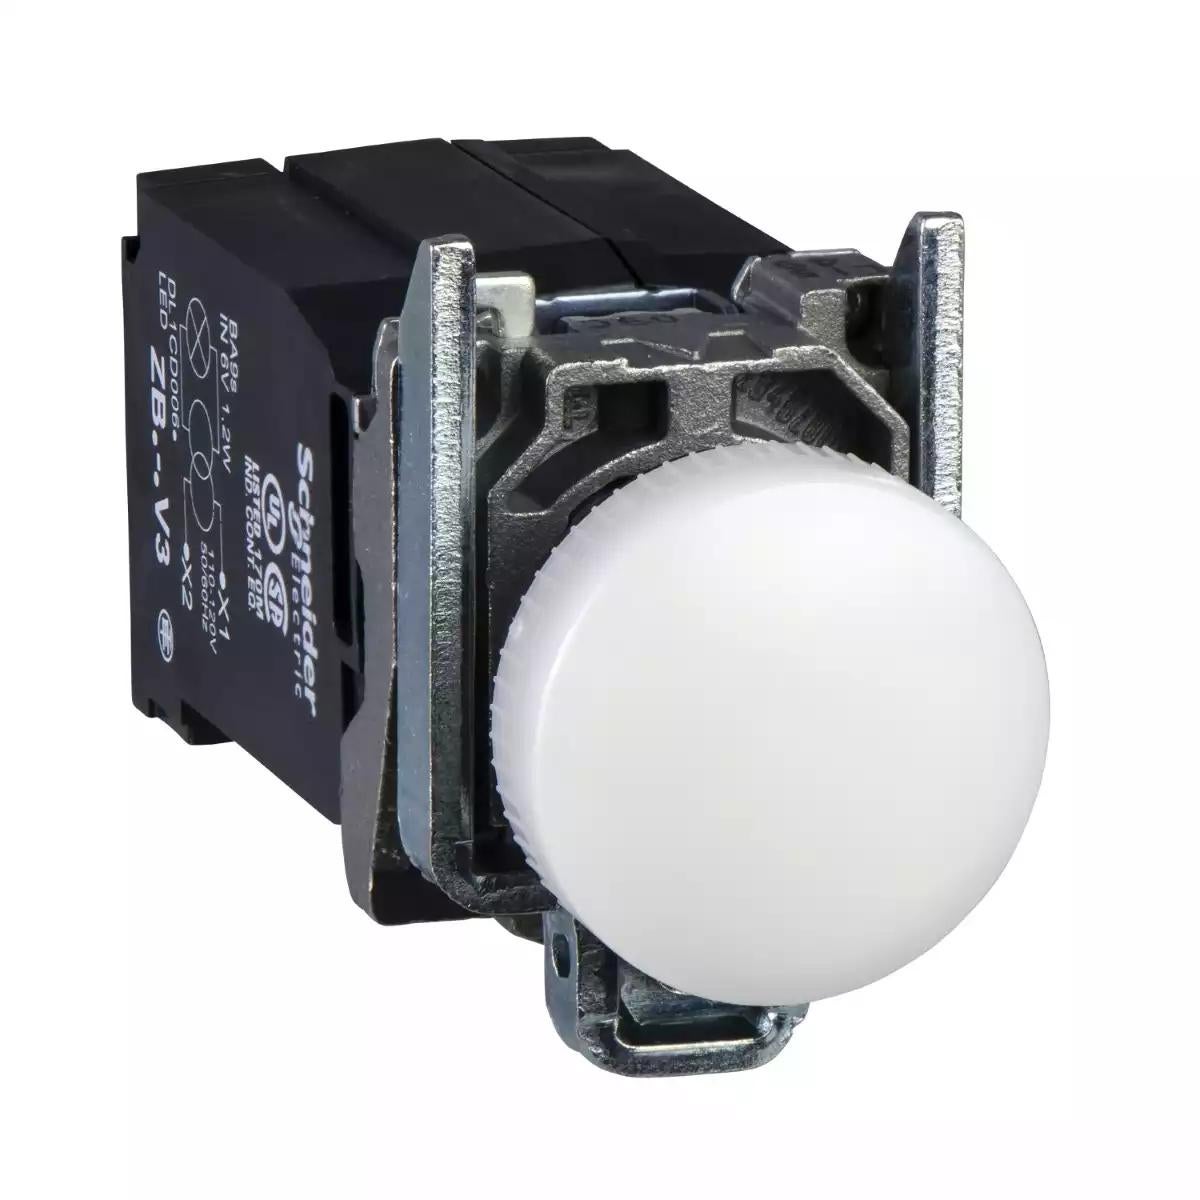 Pilot light, Harmony XB4, incandescent light, white, 22mm, with plain lens, BA9s bulb, 110…120V